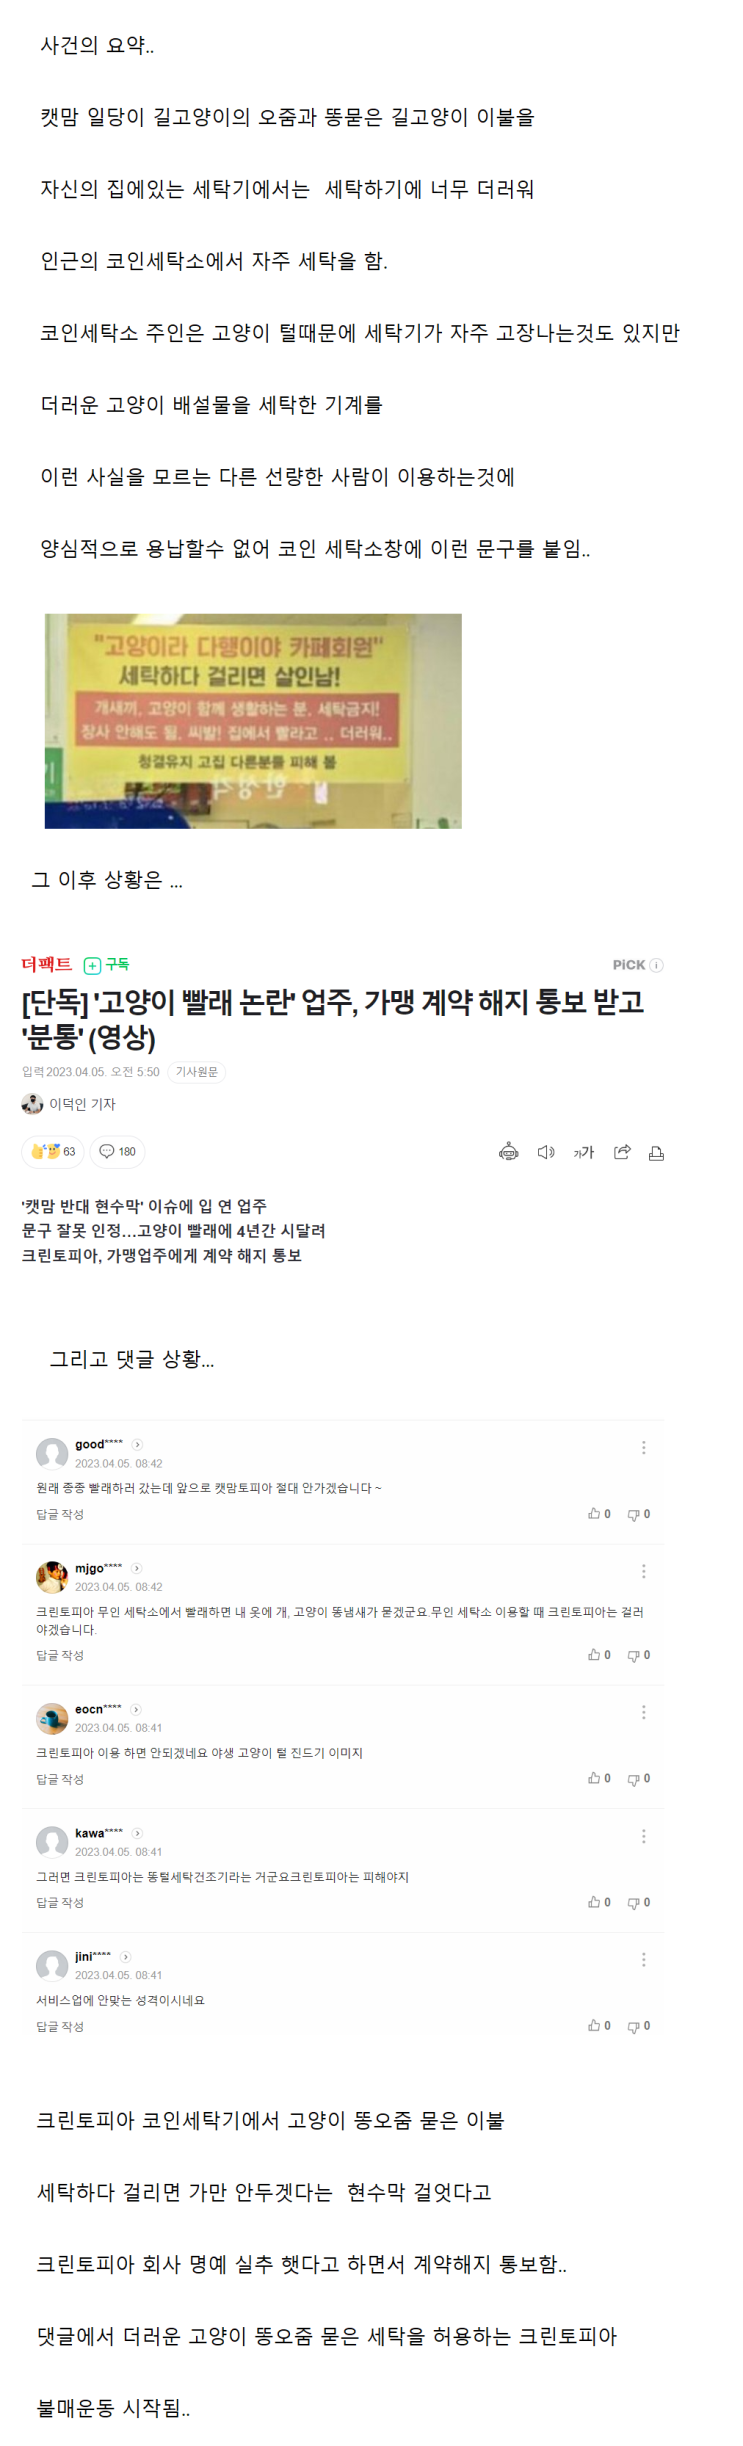 캣맘 세탁불가 욕설 현수막 지점 계약해지 의혹 사건